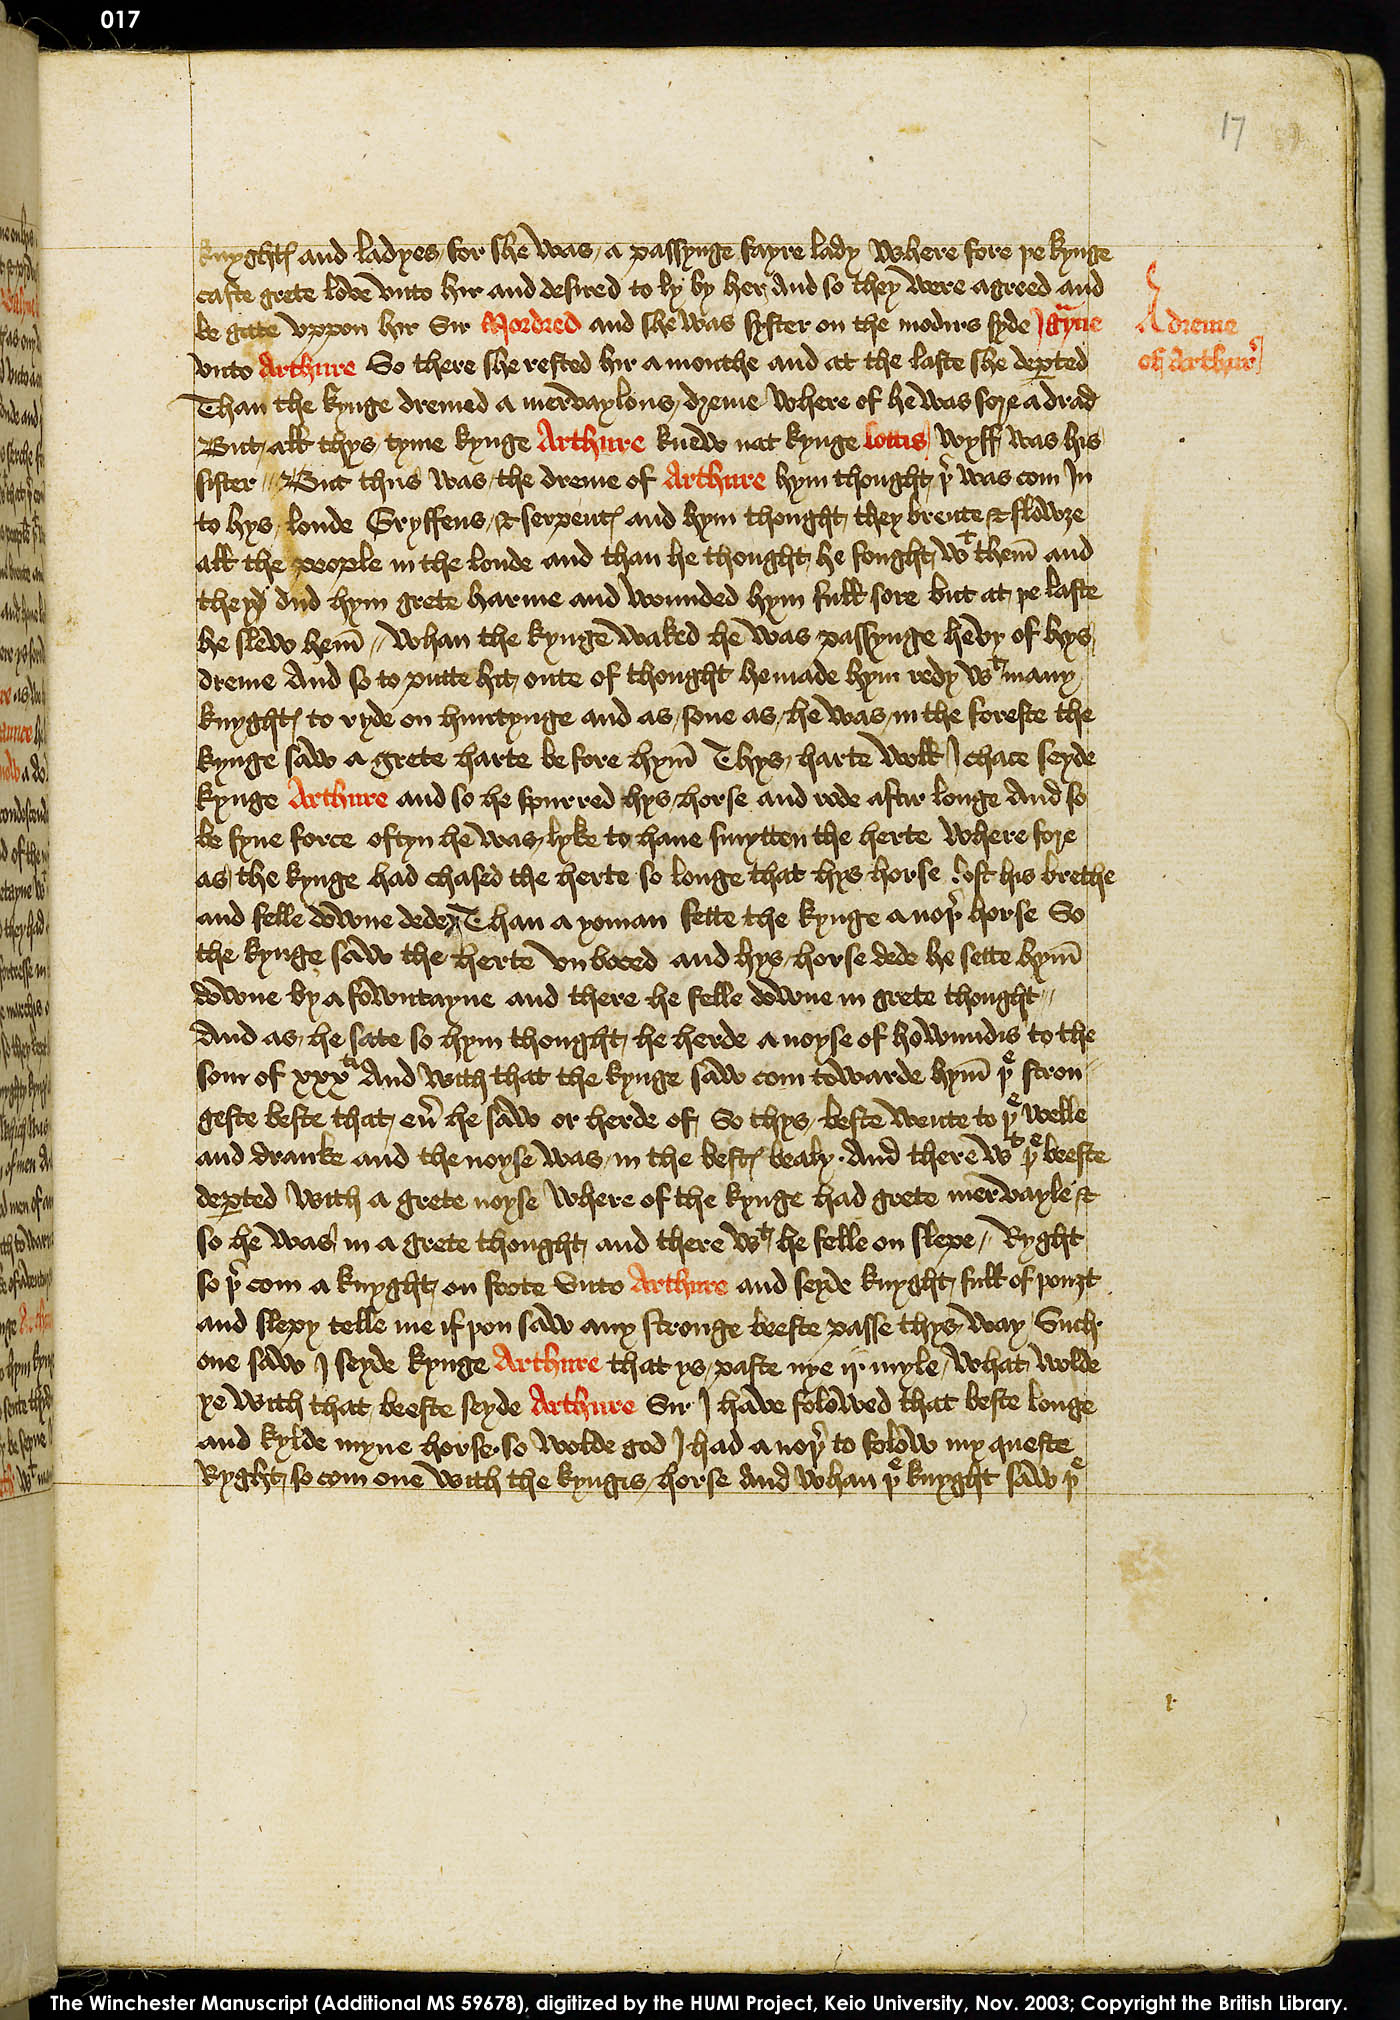 Folio 17r